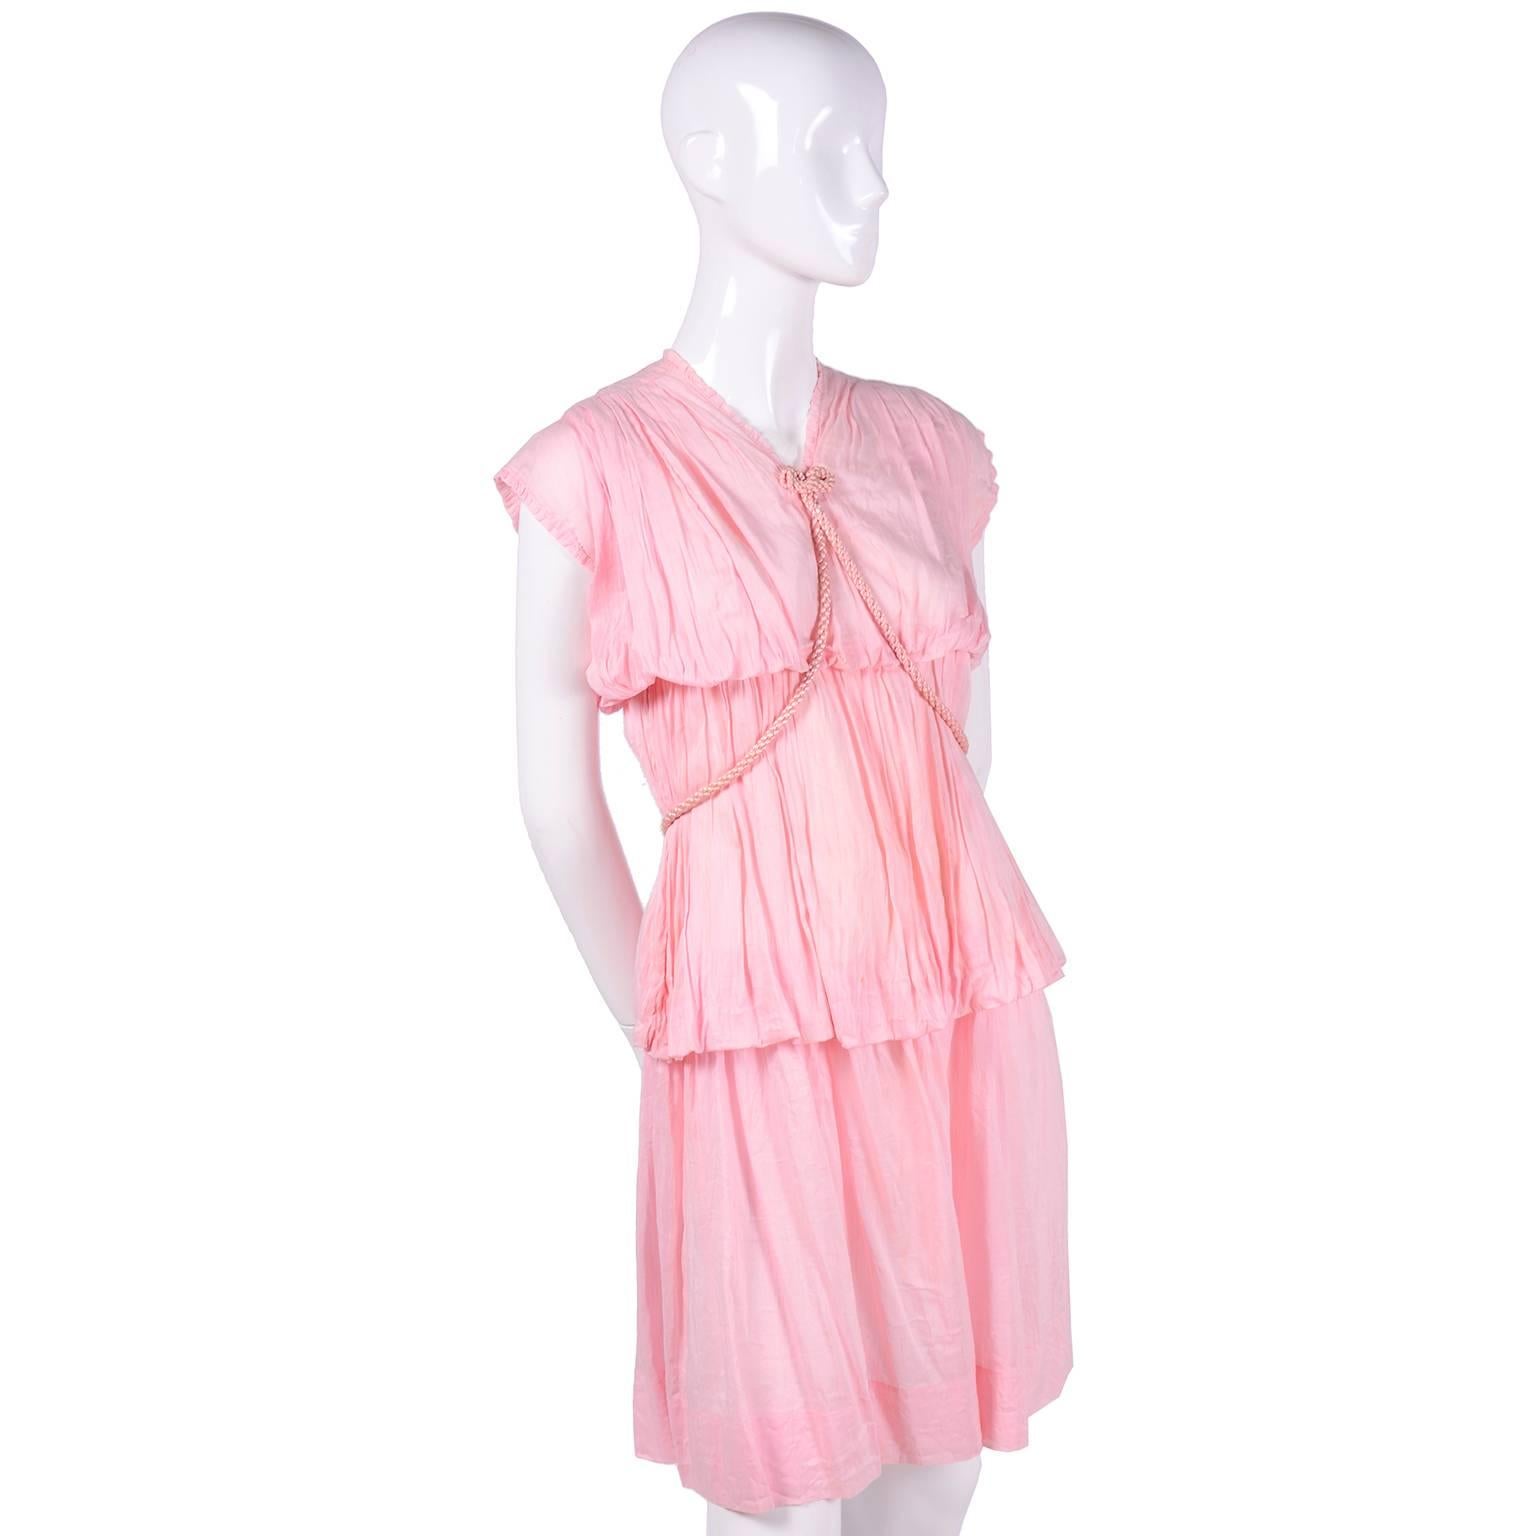 Il s'agit d'une robe vintage absolument magnifique des années 1920. La robe  est en voile de coton rose ultra fin avec des étages de tissu légèrement froncé et une ceinture en corde de satin rose tressée. La ceinture peut être portée à la grecque ou